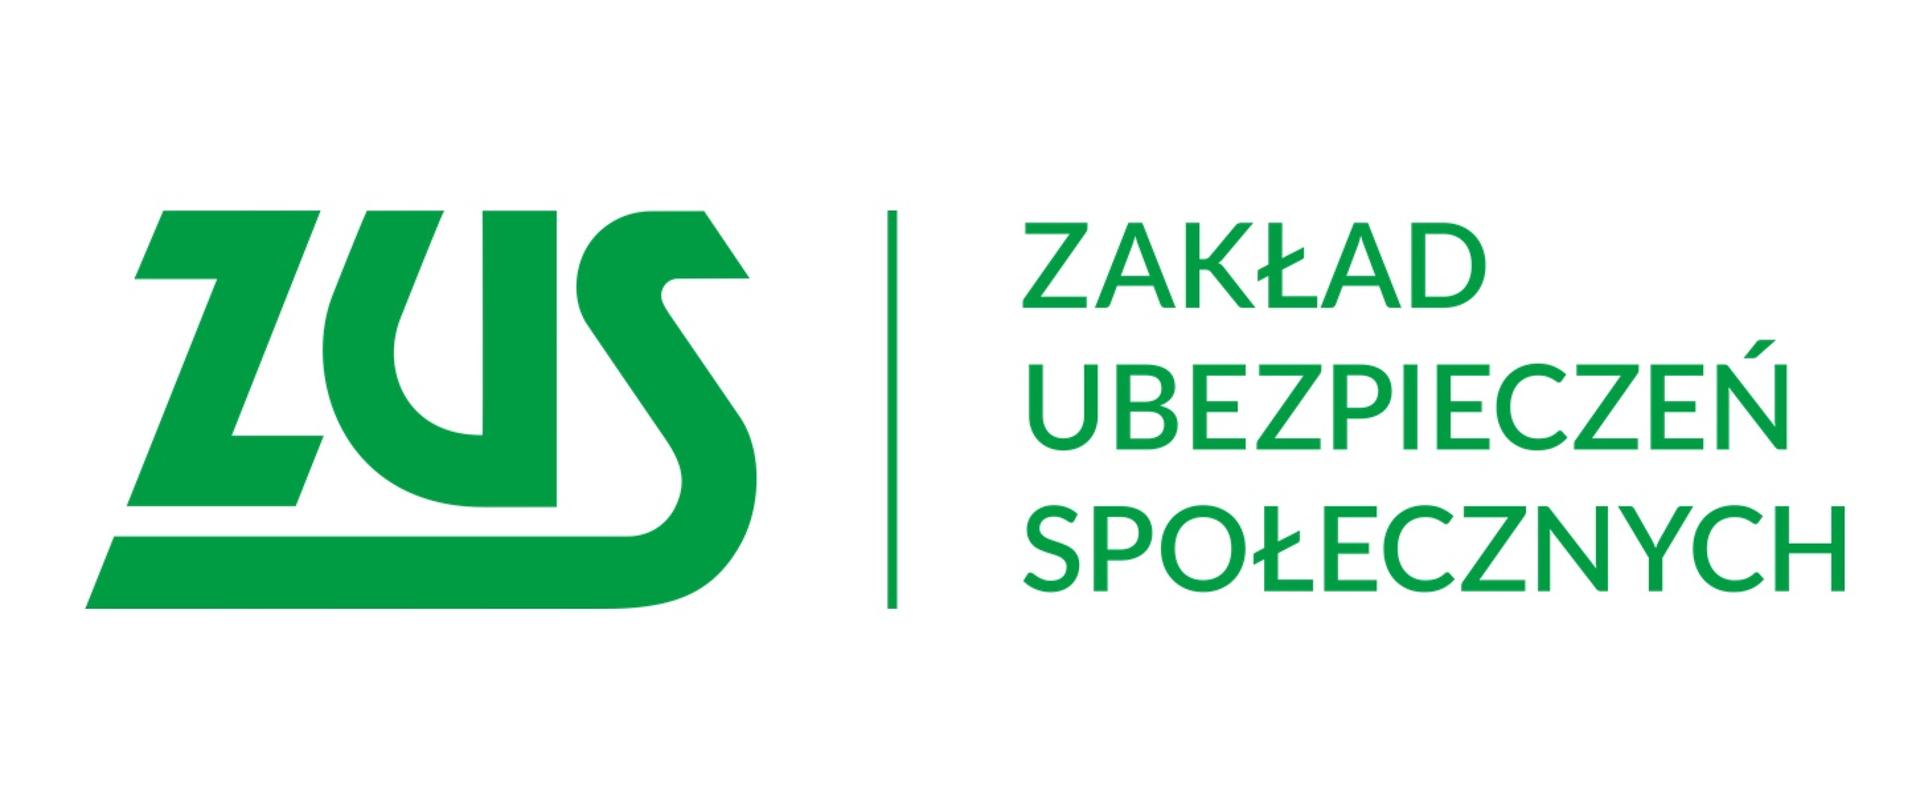 grafika przedstawia logotyp Zakład Ubezpieczeń Społecznych z zielonym napisem ZUS i Zakład Ubezpieczeń Społecznych